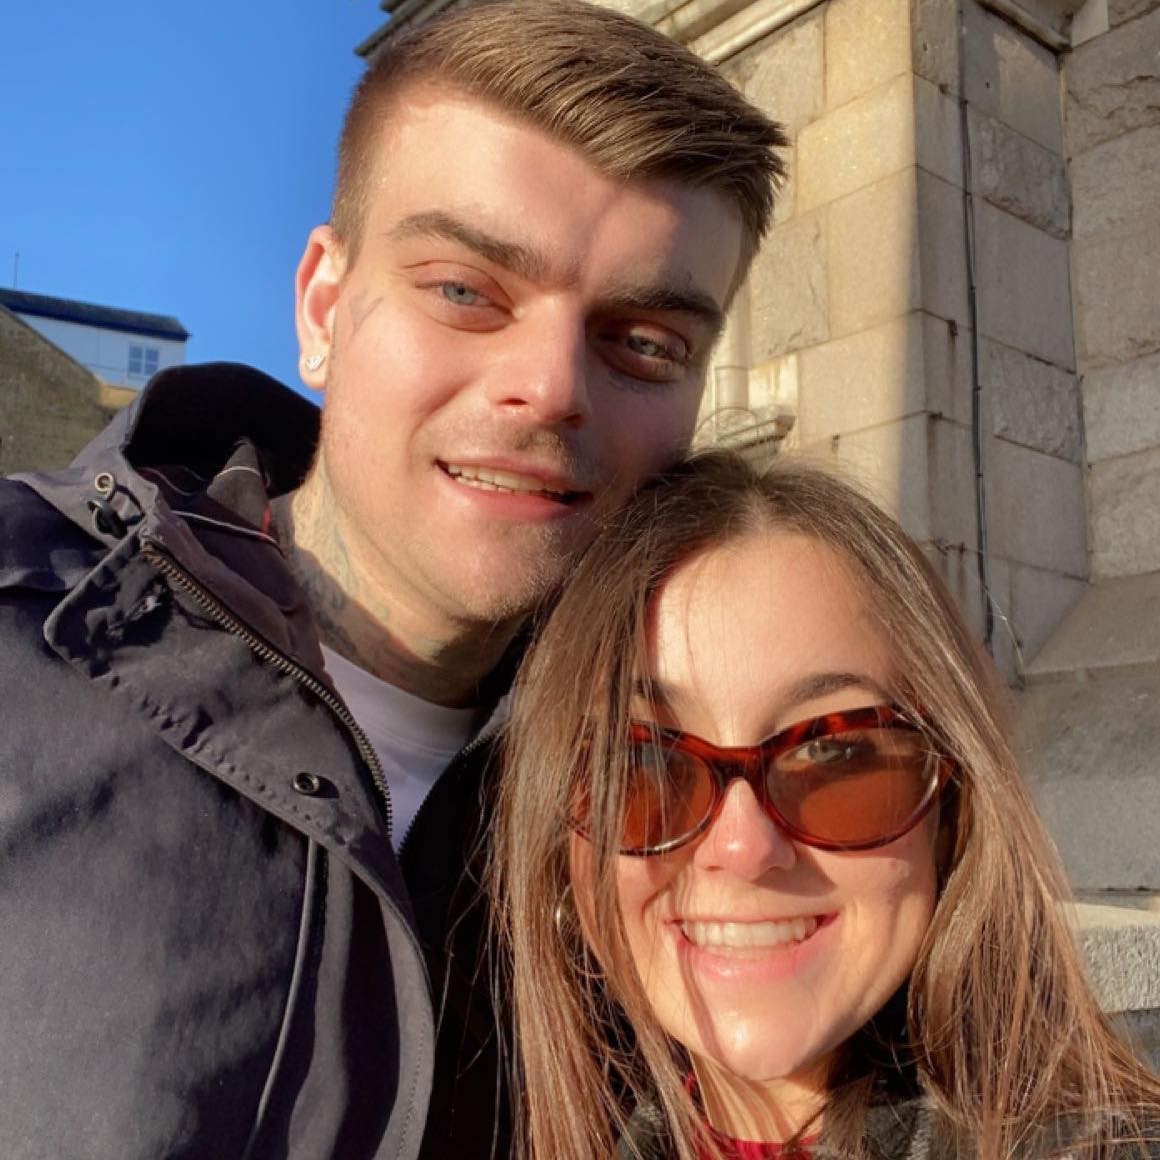 Ashley Wadsworth viajou mais de 7 mil km em novembro, do Canadá para a Inglaterra, para conhecer namorado virtual (Foto: Reprodução/Facebook)